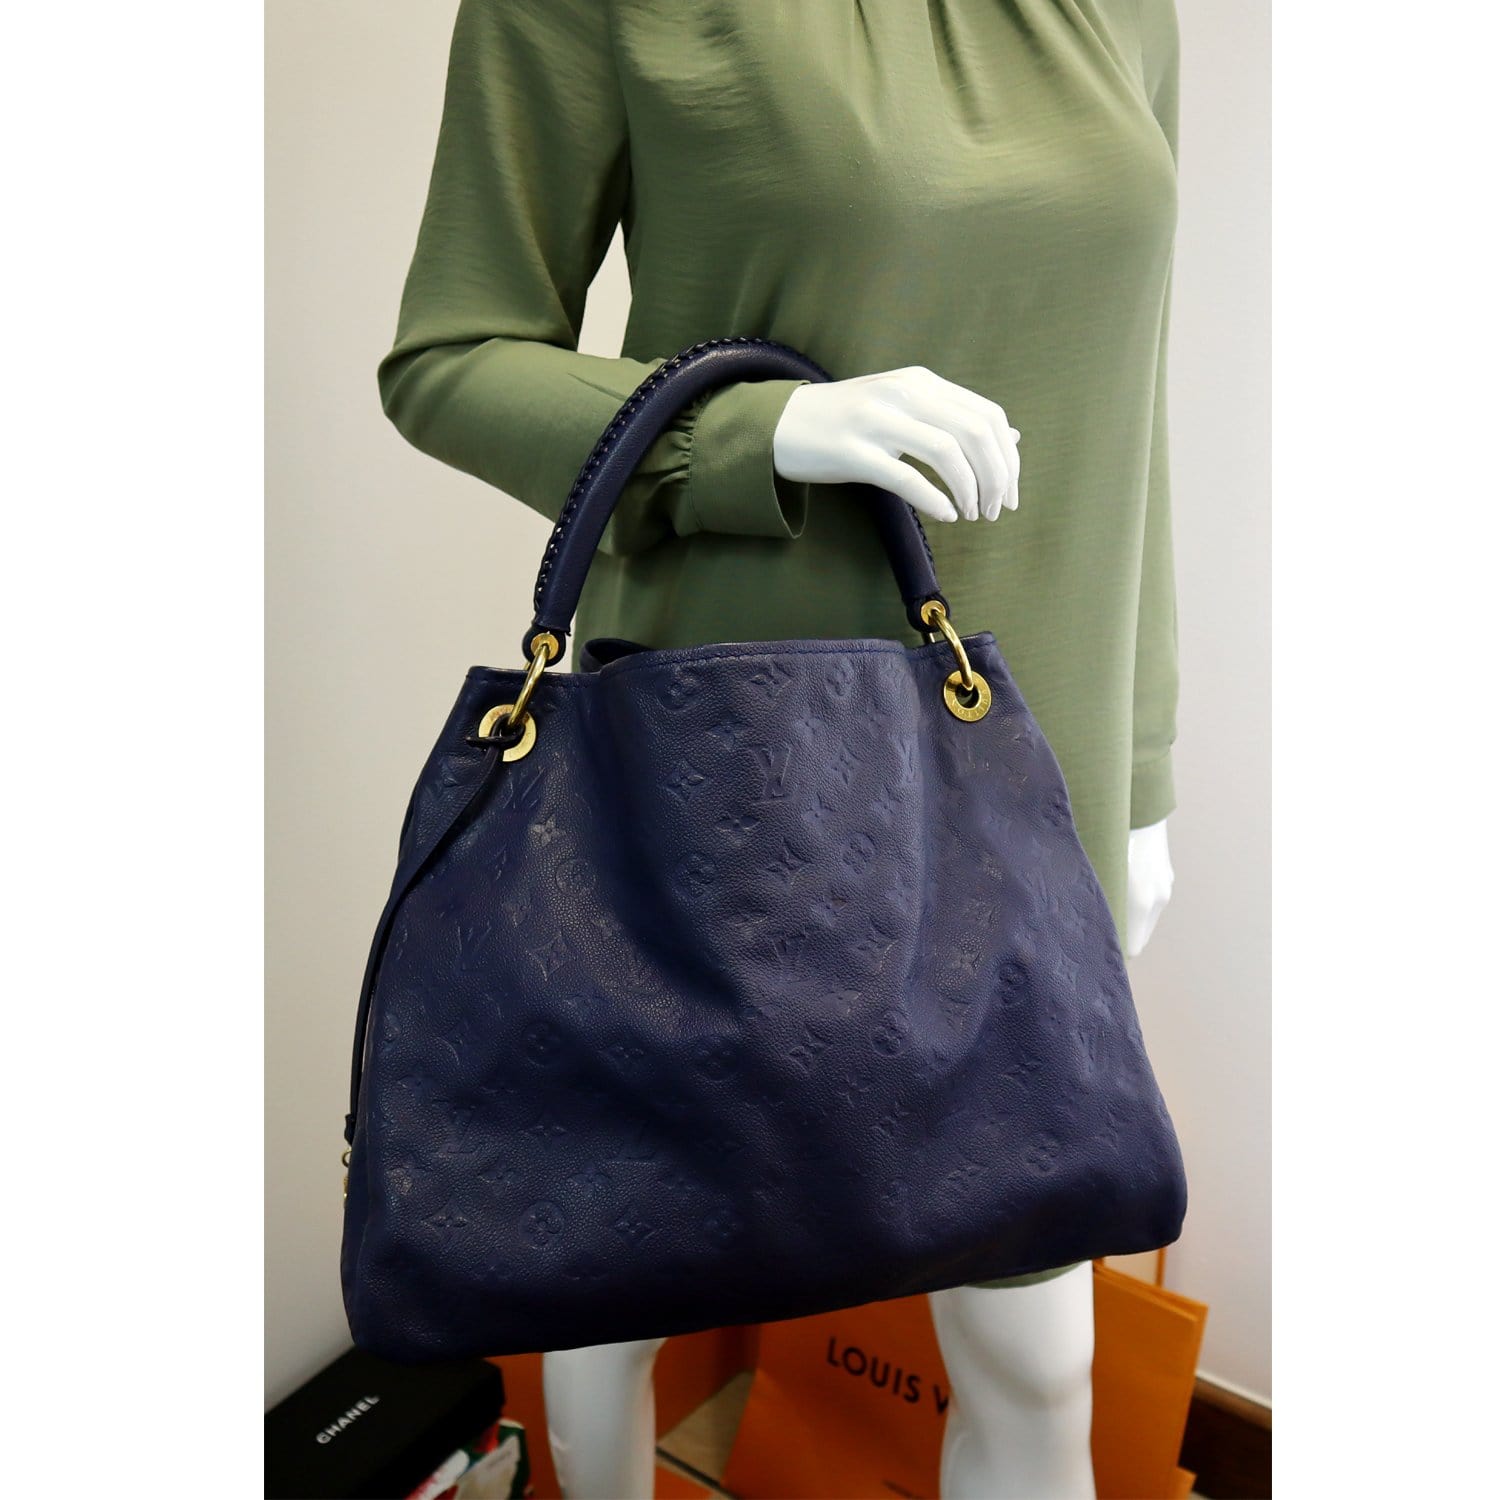 LOUIS VUITTON Authentic Empreinte Leather Tote Handlbag Shoulder Bag Blue